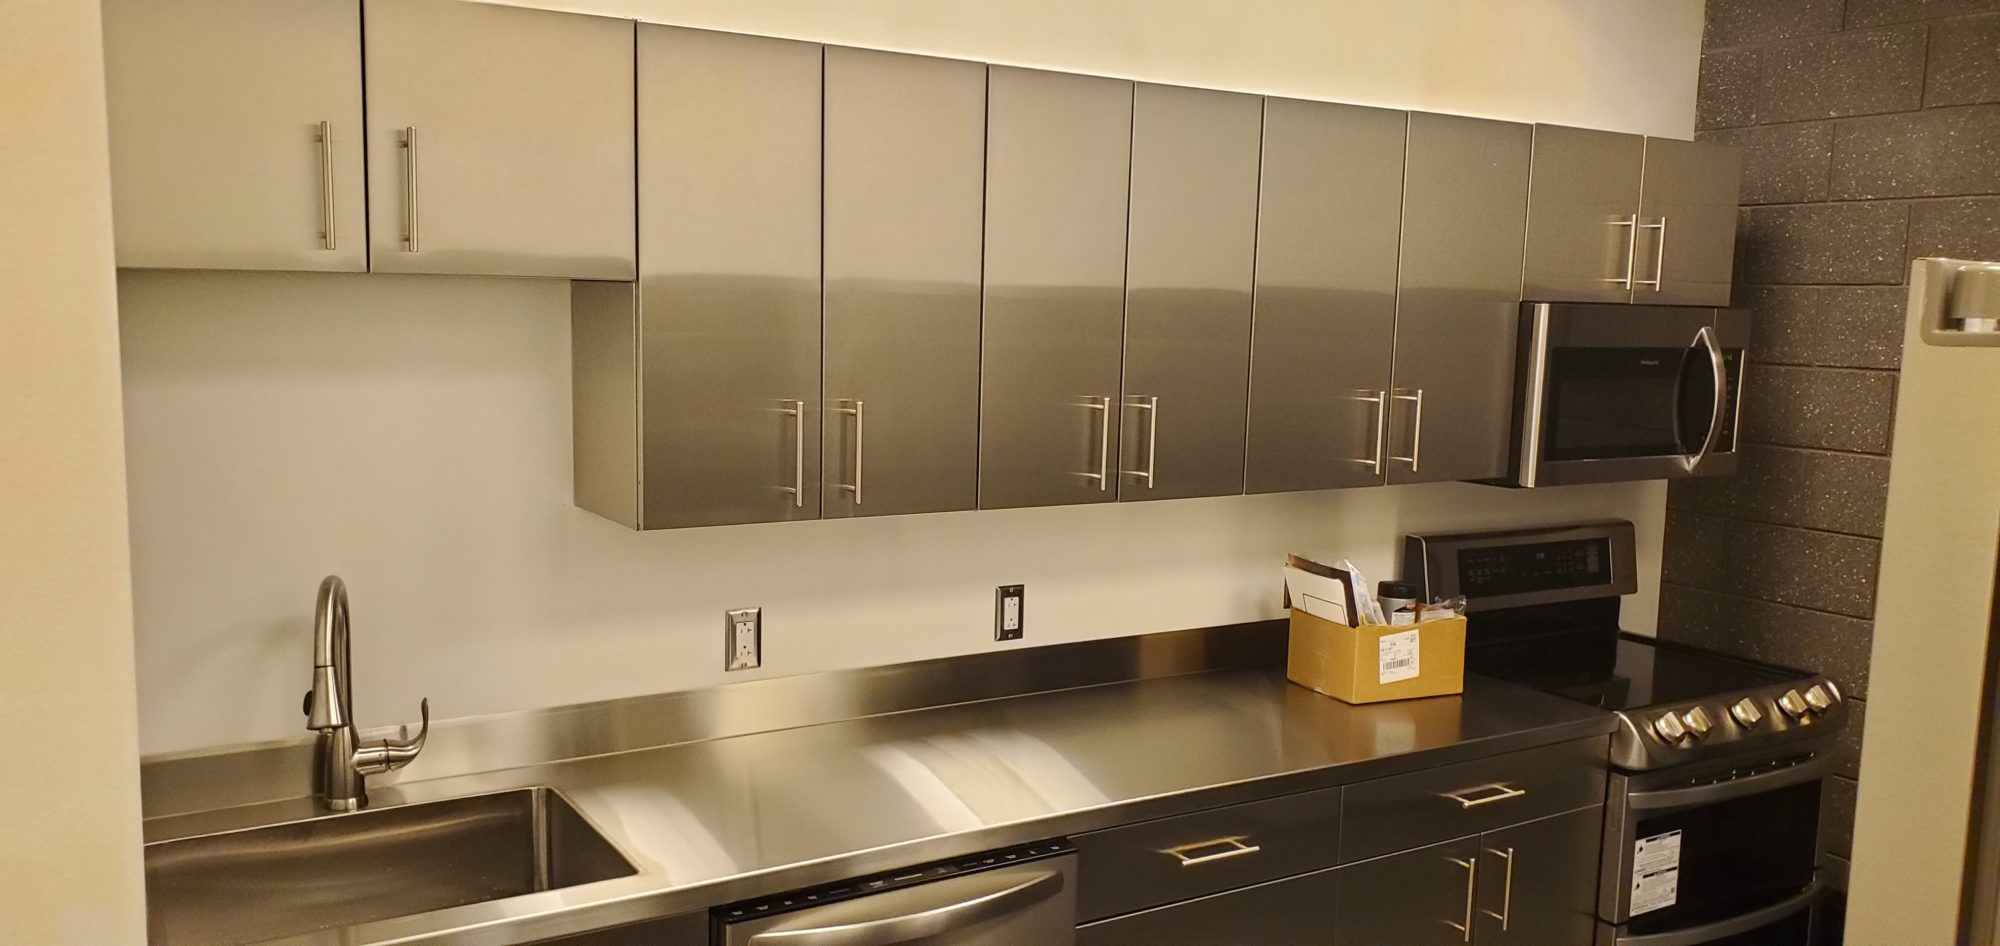 Stainless Steel Break Room Kitchen Cabinets Steelkitchen